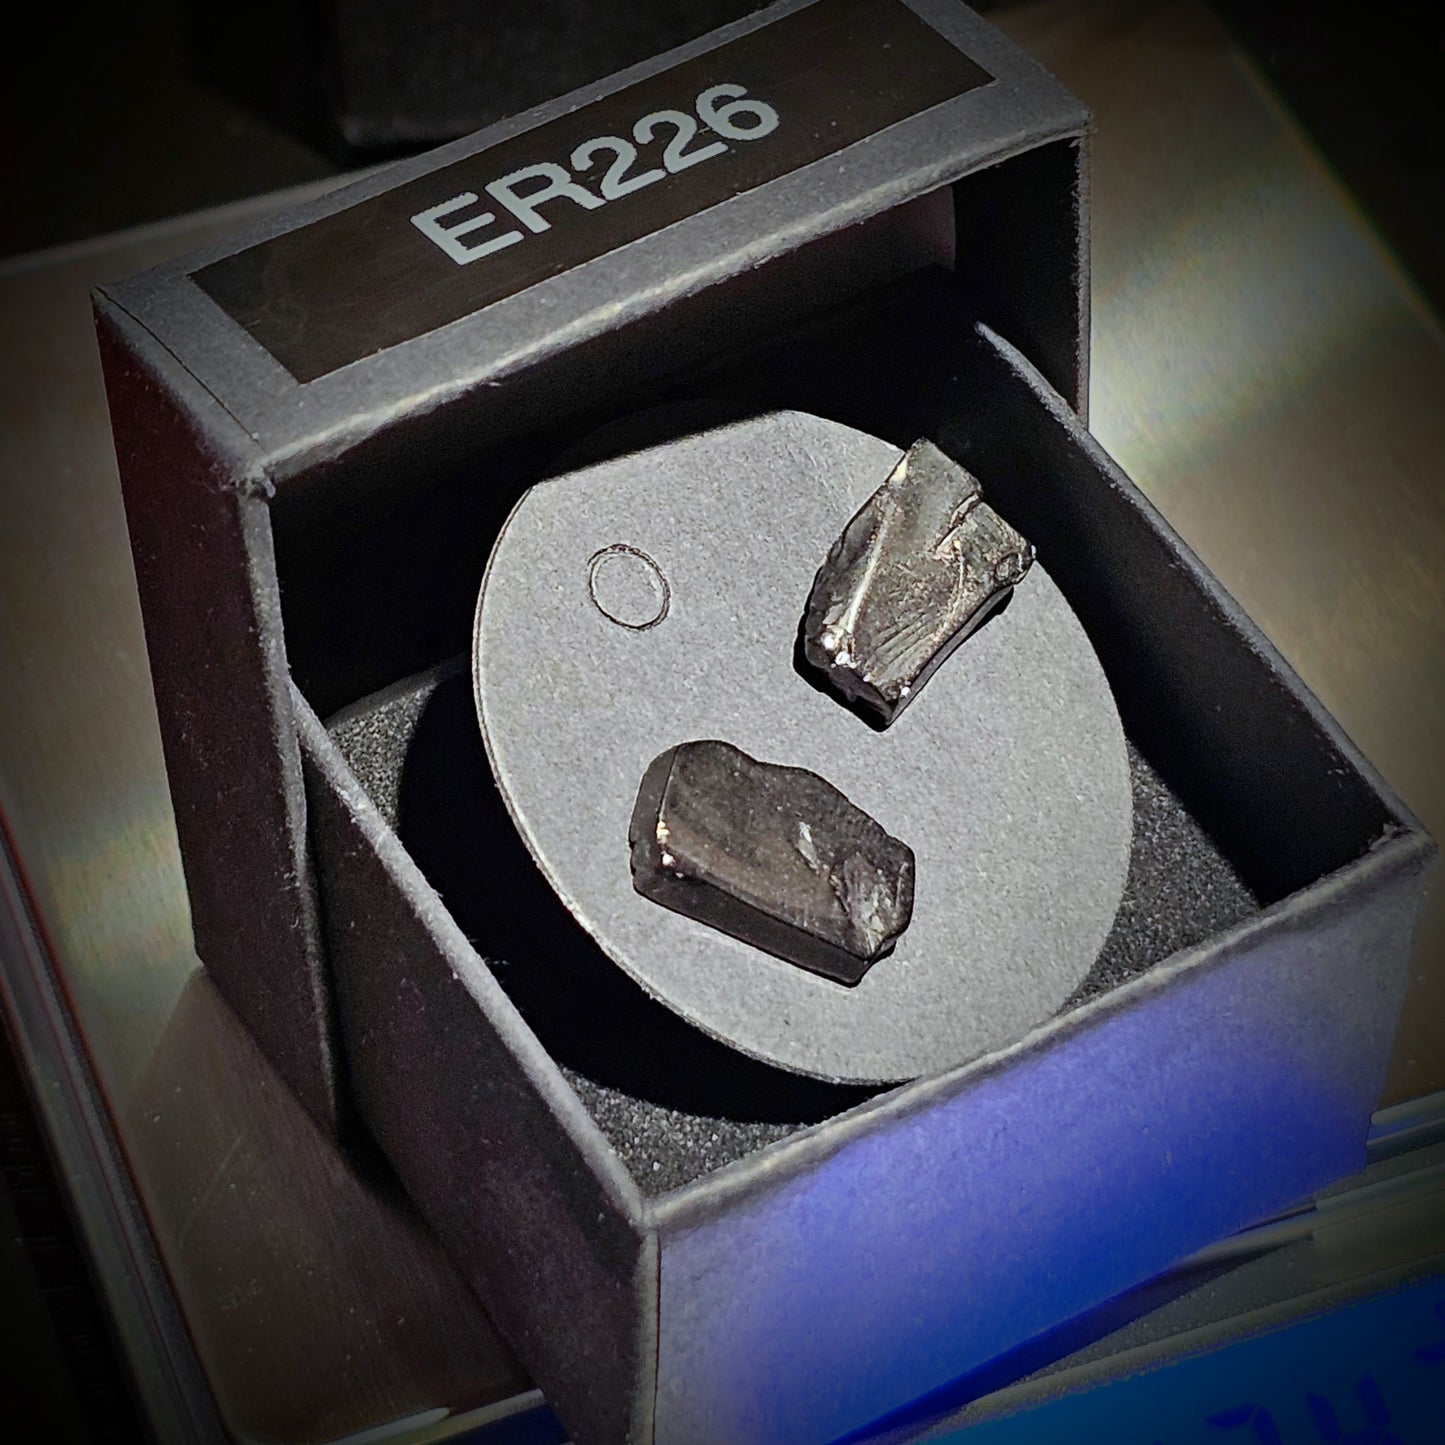 ER226 -  Type 1 Raw Shungite Earrings Set